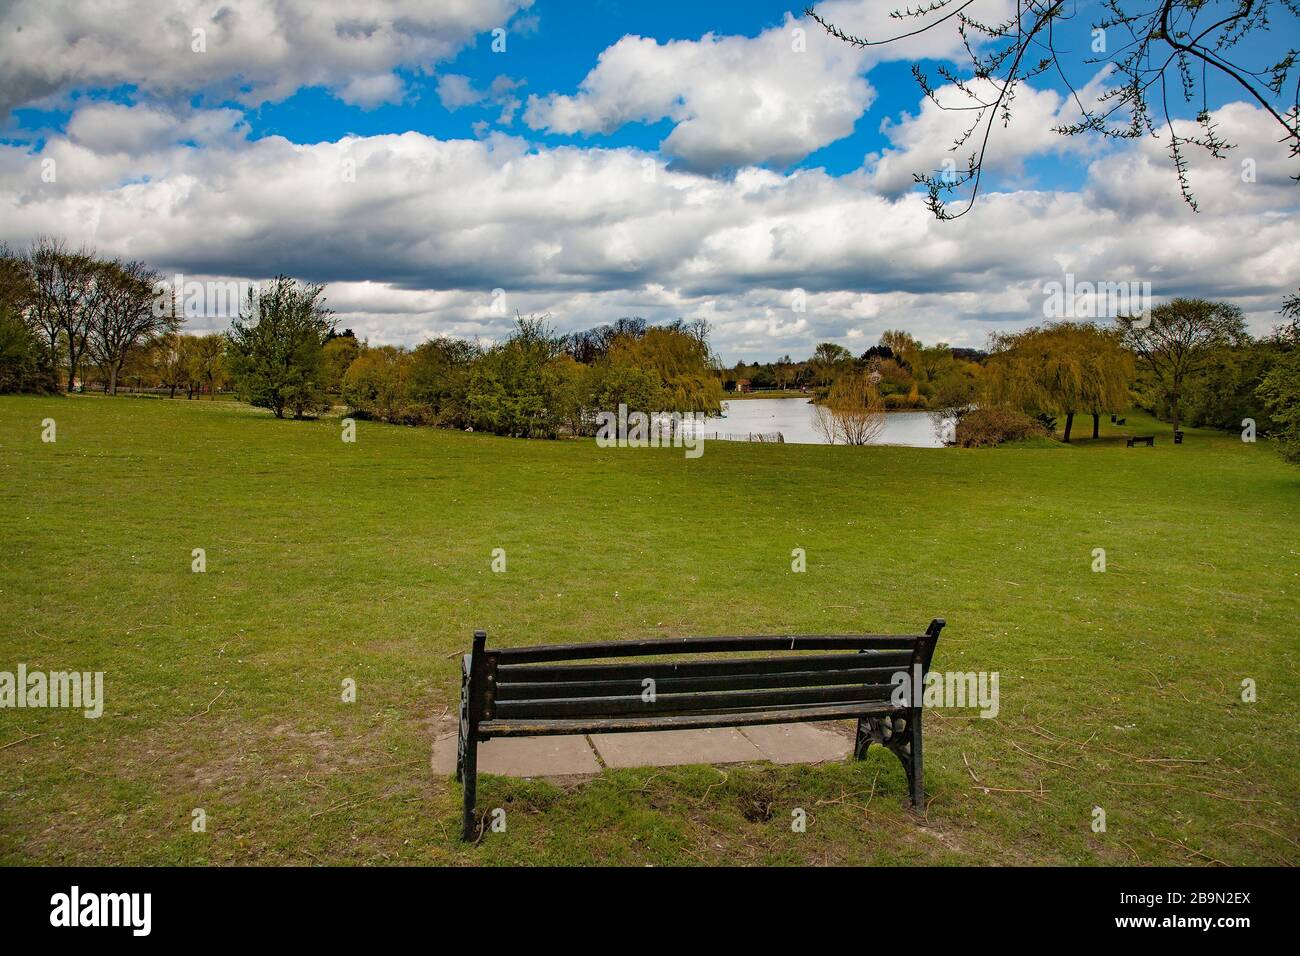 Panchina per vedere la bellezza di Swanley Park e del lago Foto Stock